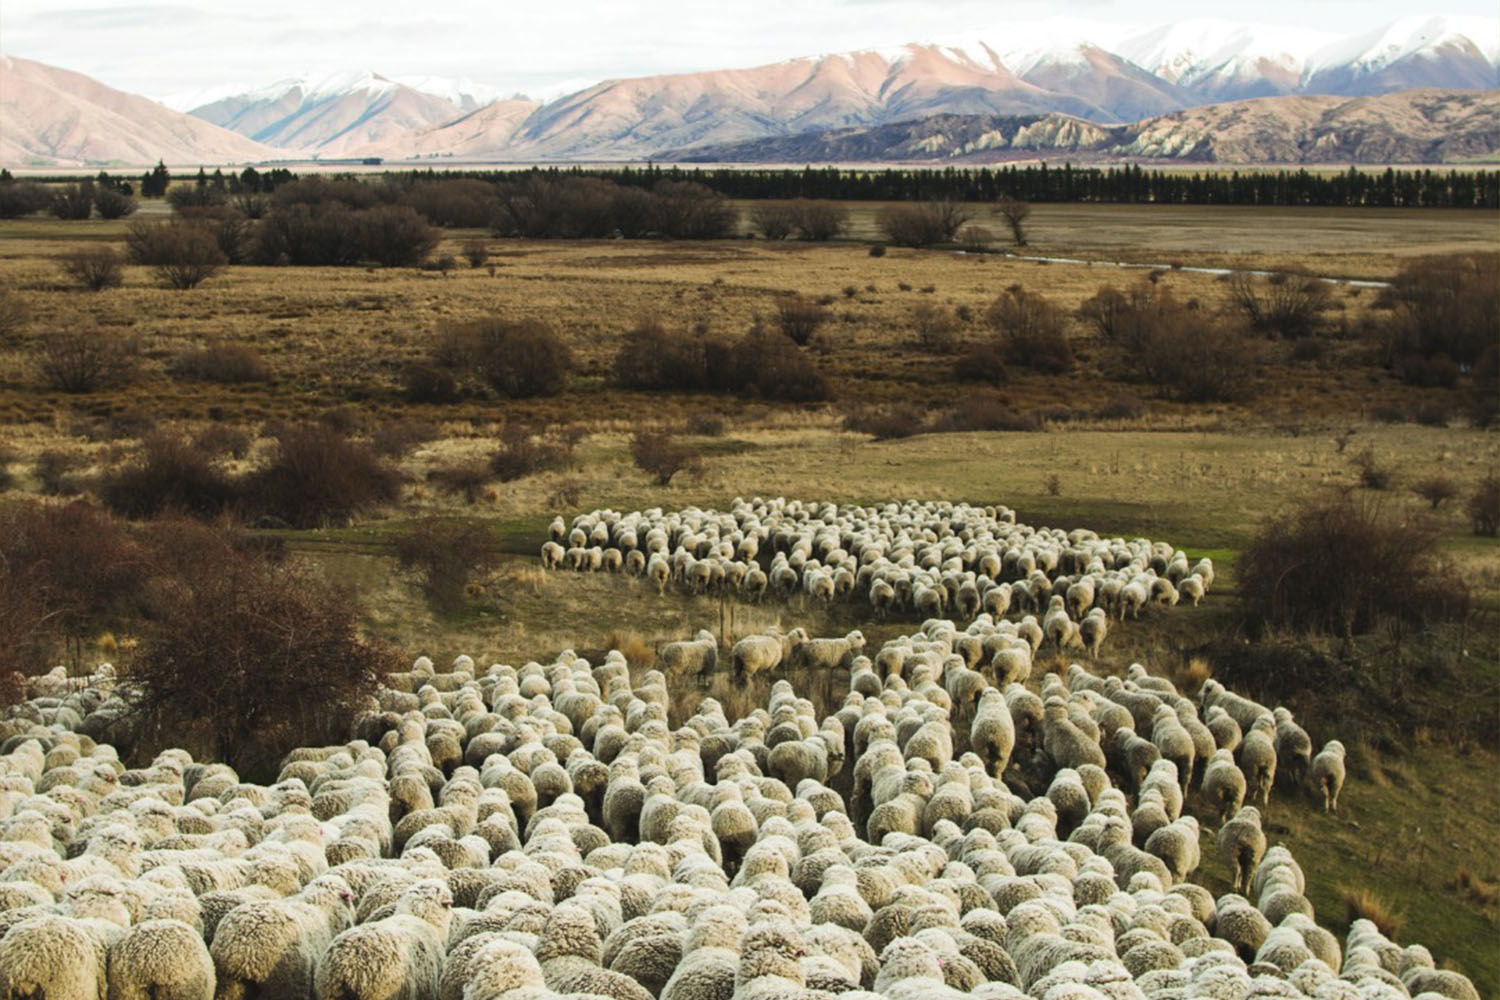 Merino-Wool sheep